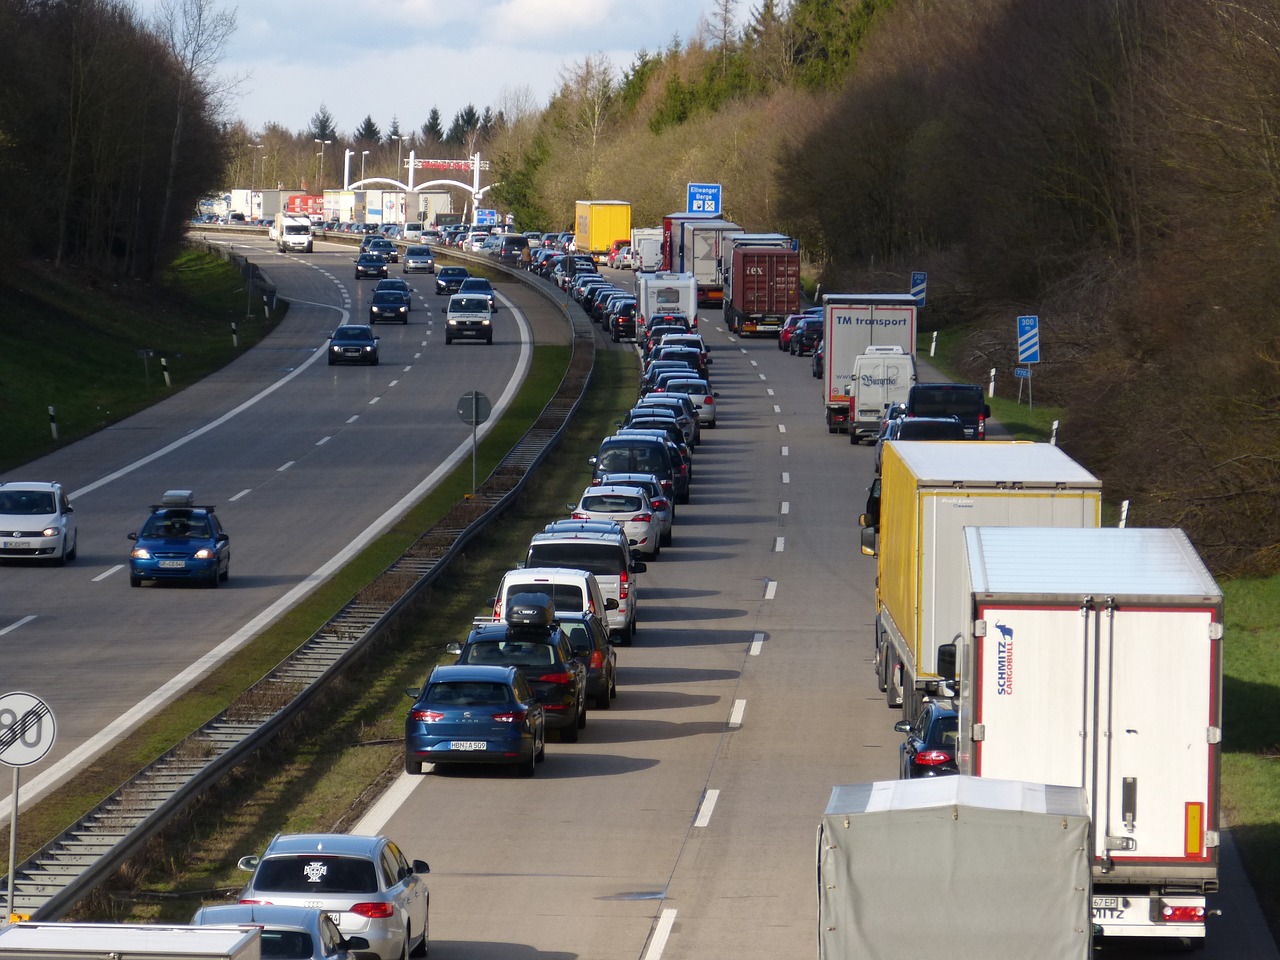 Απαγόρευση κυκλοφορίας φορτηγών μέγιστου επιτρεπόμενου βάρους άνω των 3,5 τόνων κατά την περίοδο εορτασμού του Πάσχα